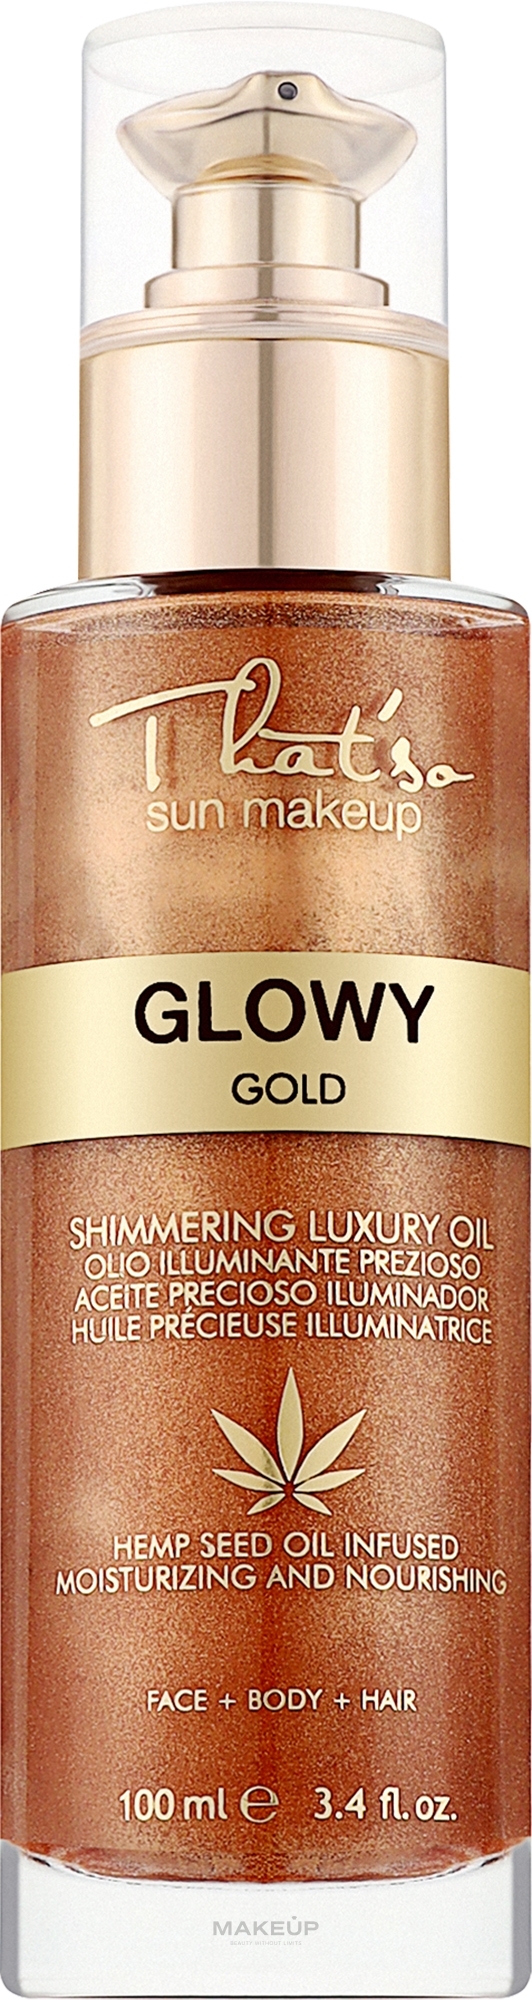 Увлажняющий шимер для лица, тела и волос - That'so Glowy Gold — фото 100ml